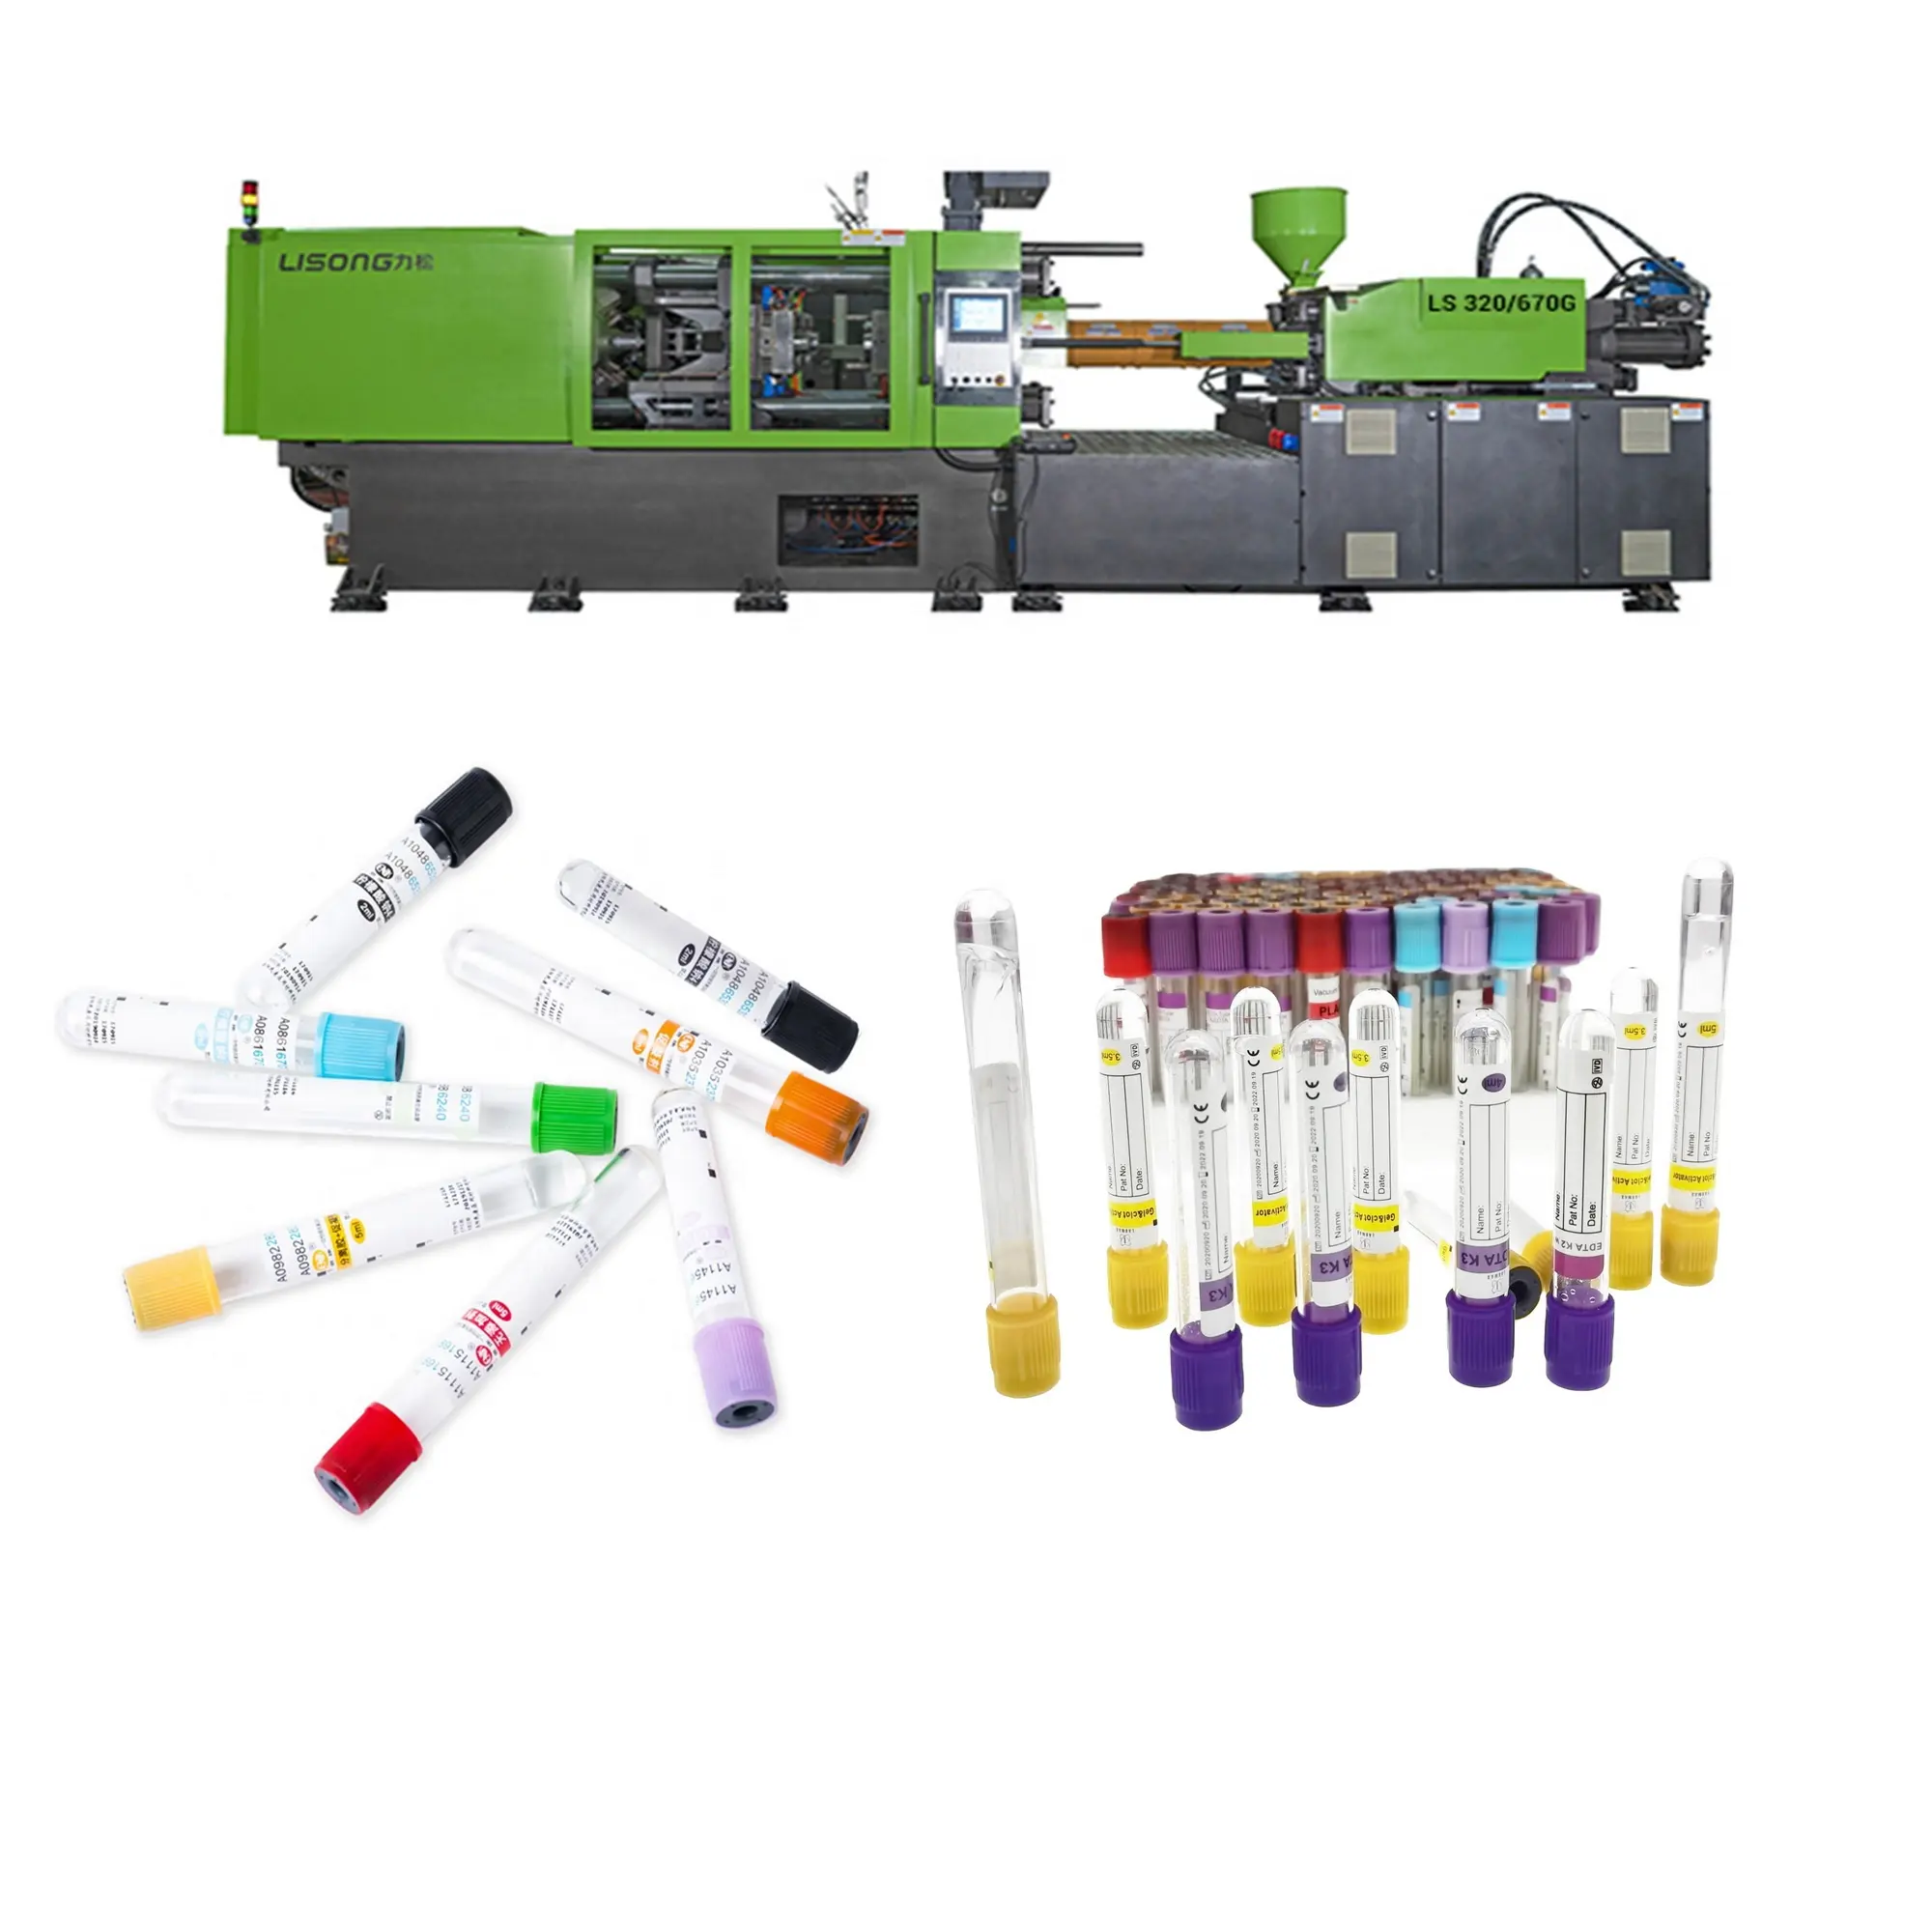 Lisong macchina per lo stampaggio ad iniezione di provette per la raccolta del sangue sotto vuoto in plastica